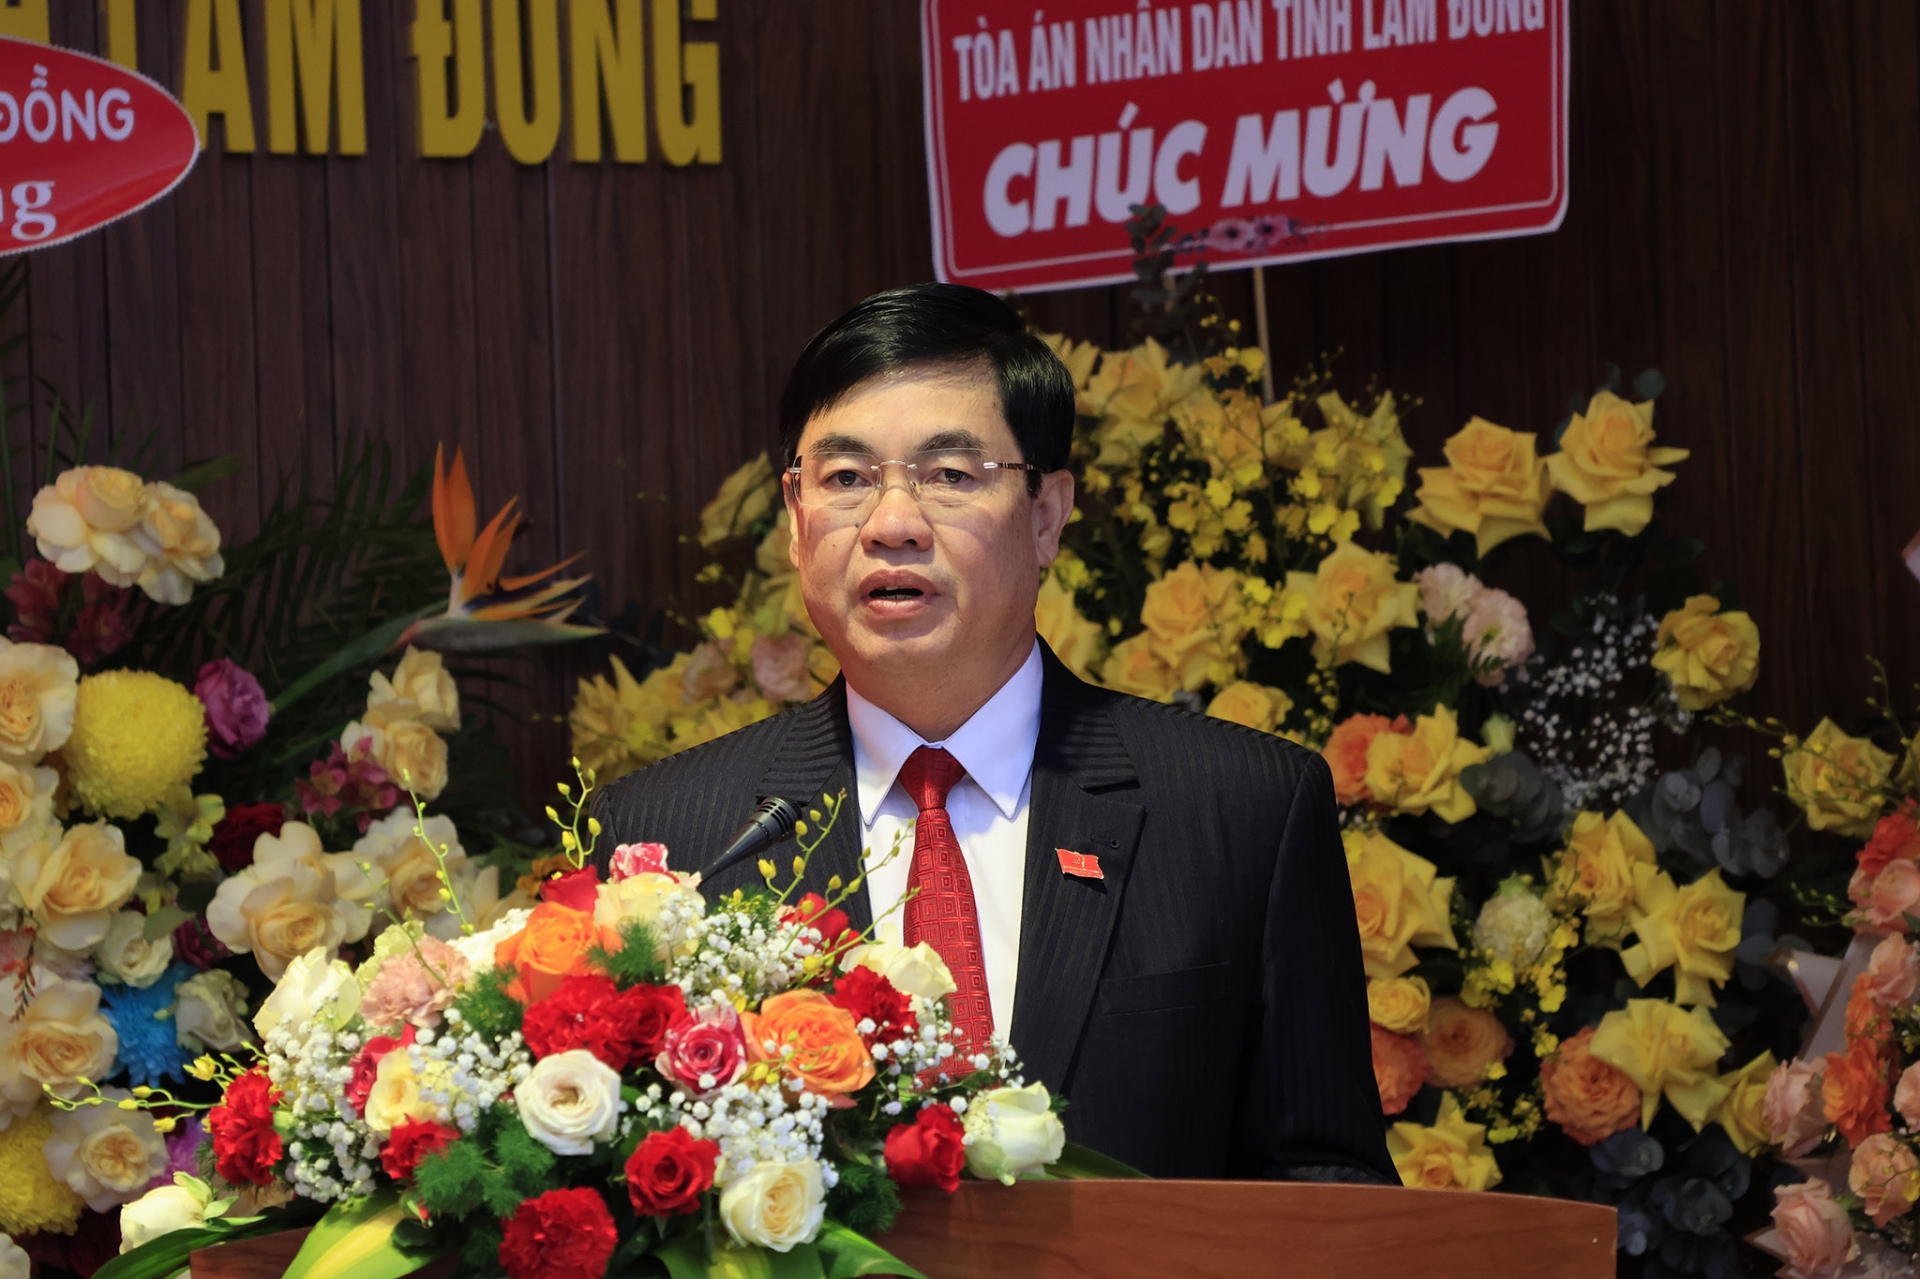 Đồng chí Trần Đình Văn - Phó Bí thư Thường trực Tỉnh ủy phát biểu chỉ đạo và chức mừng tại buổi lễ